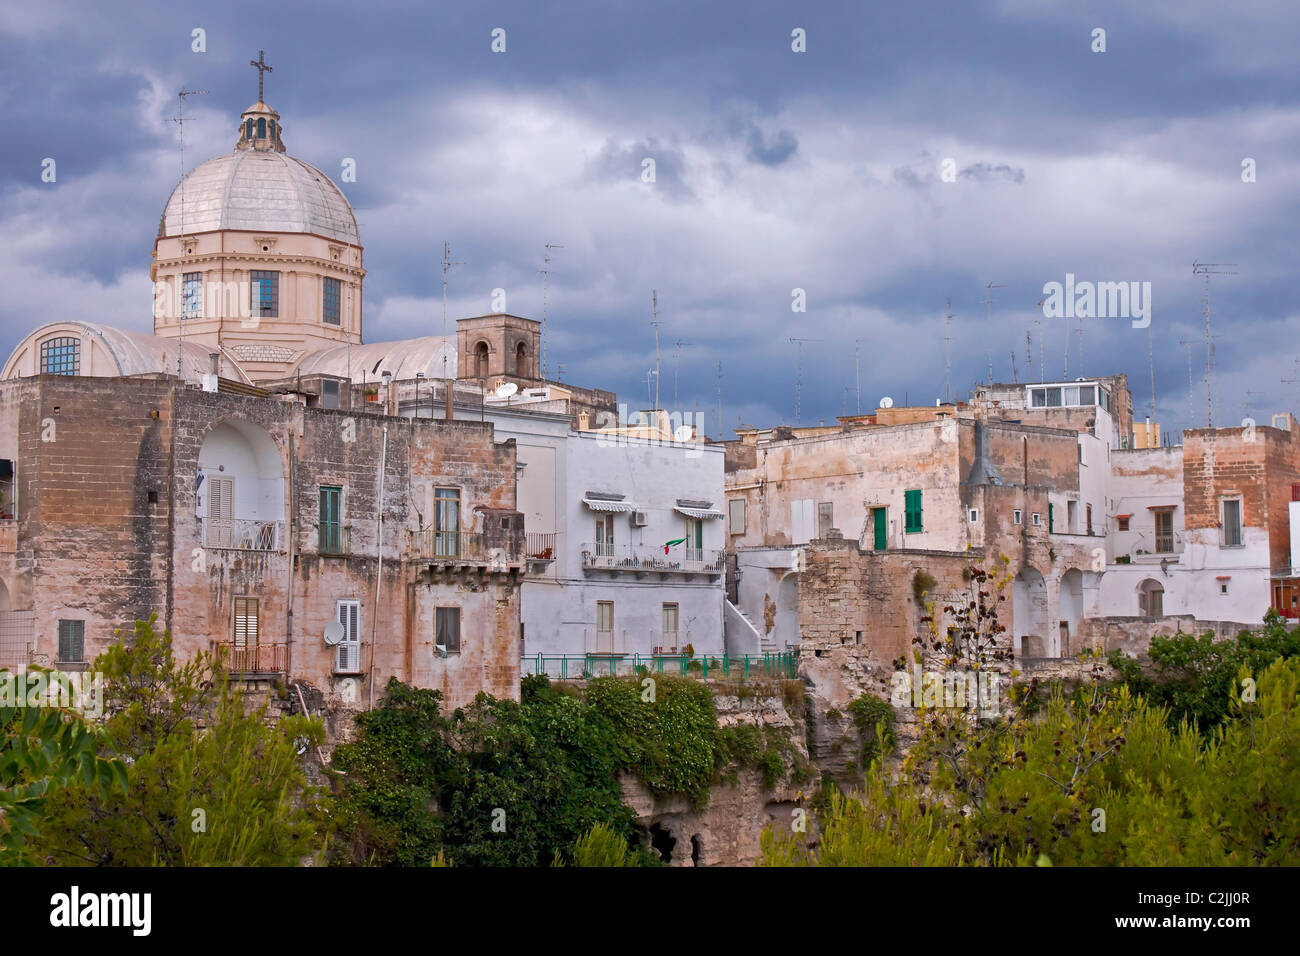 Massafra - Apulien - Italien während eines Gewitters Stockfoto